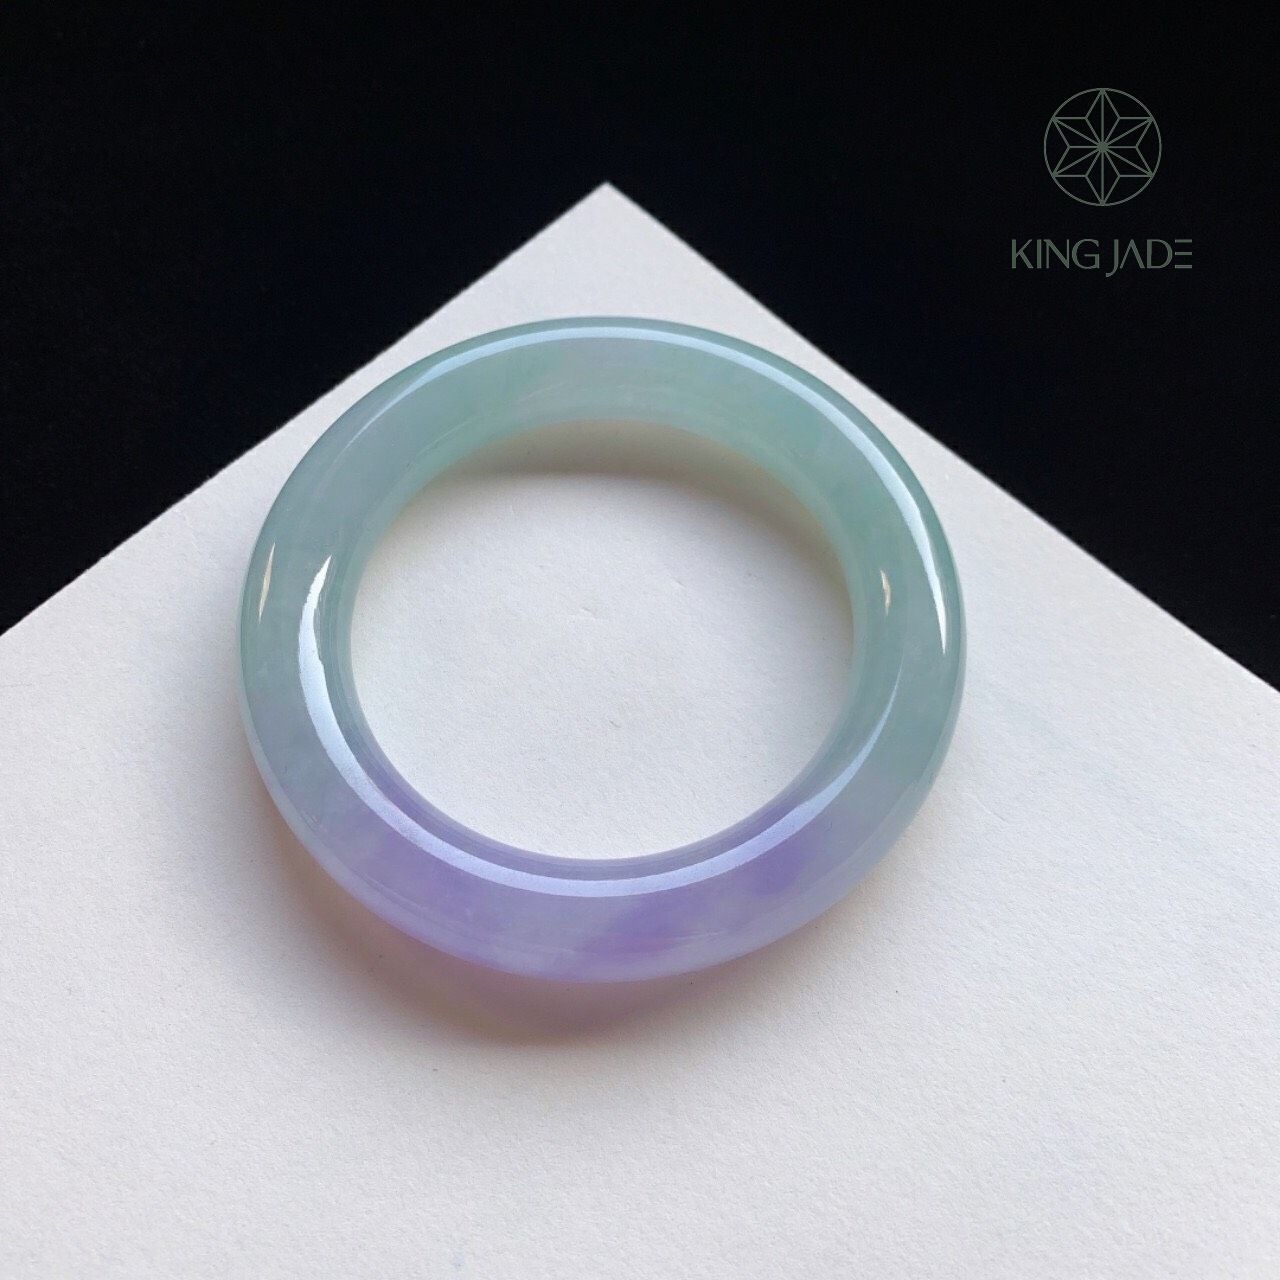 Vòng Ngọc Phỉ Thúy King Jade 038 - Sắc Màu Quyến Rũ